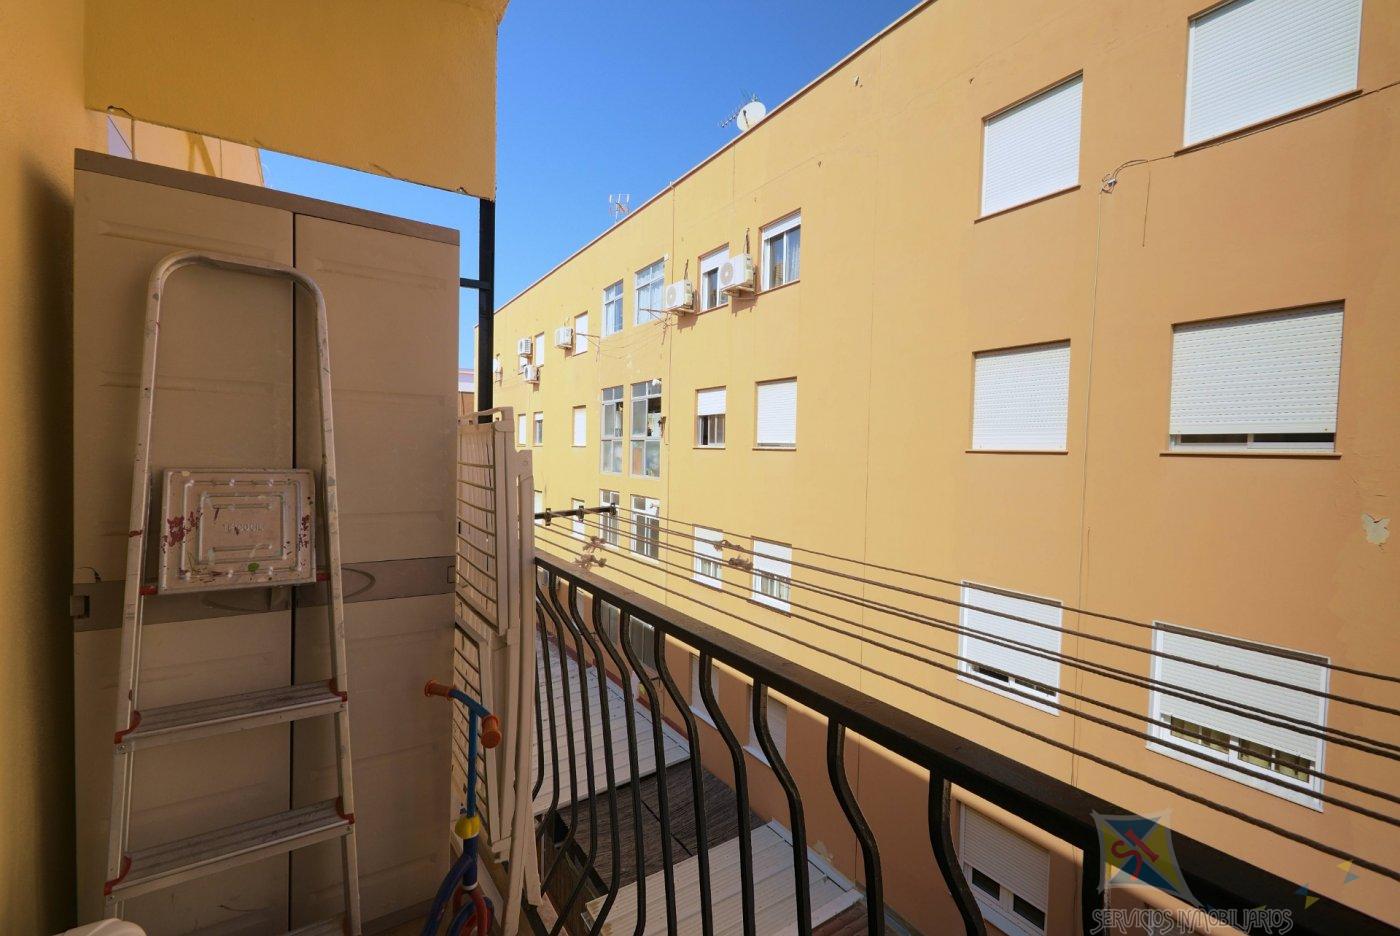 For sale of flat in Vélez - Málaga